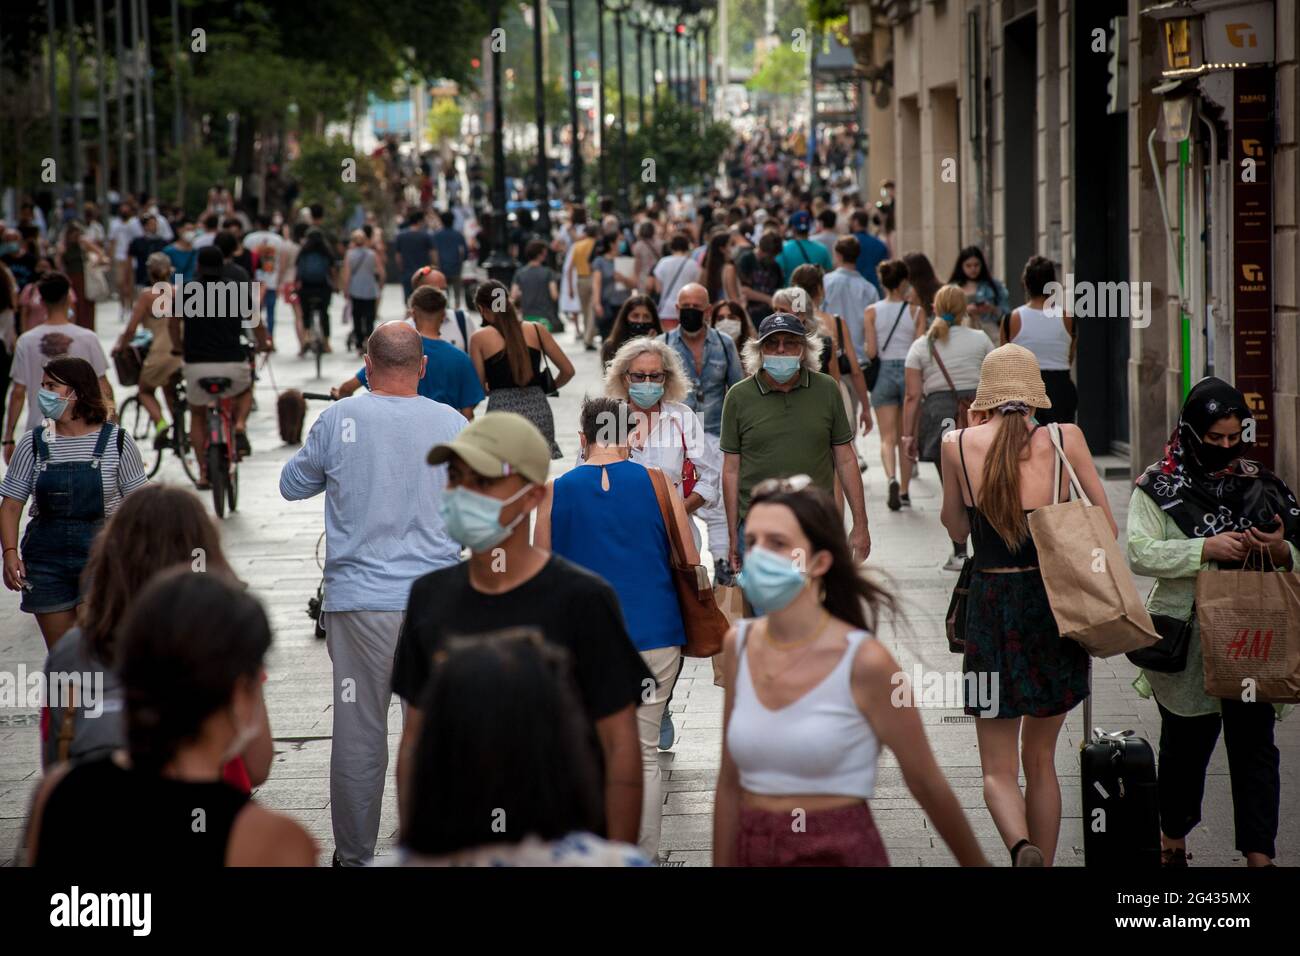 En ce vendredi après-midi, les gens portant des masques pour empêcher la propagation du coronavirus marchent dans la rue commerçante Portal del Angel à Barcelone. L'utilisation obligatoire en Espagne de masques extérieurs prendra fin le 26 juin, a déclaré aujourd'hui le Premier ministre espagnol Pedro Sanchez. Banque D'Images